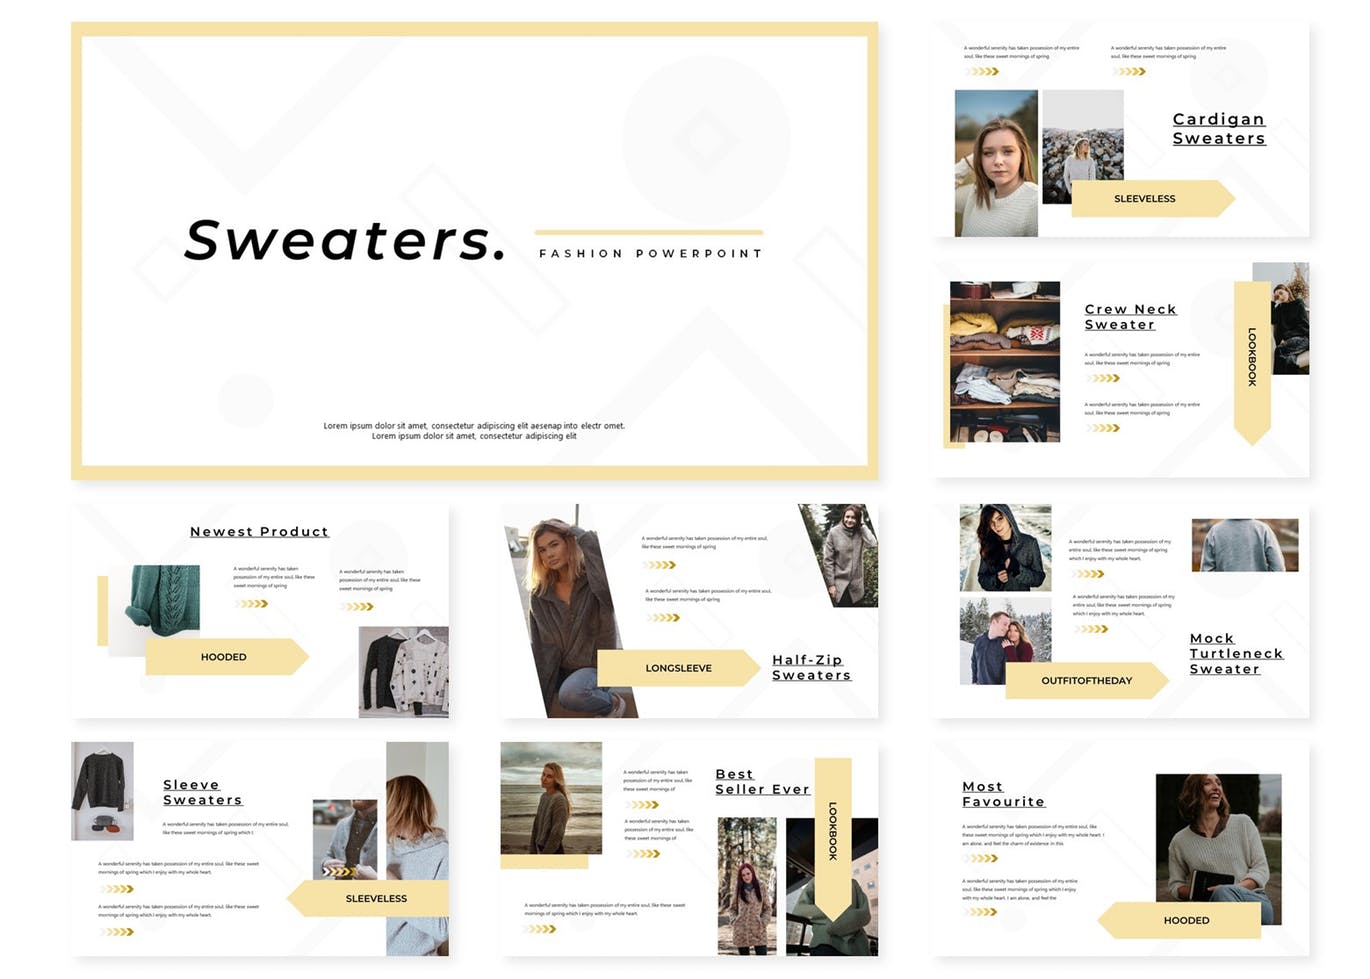 服装品牌新品目录介绍第一素材精选Keynote模板 Sweaters | Keynote Template插图(1)